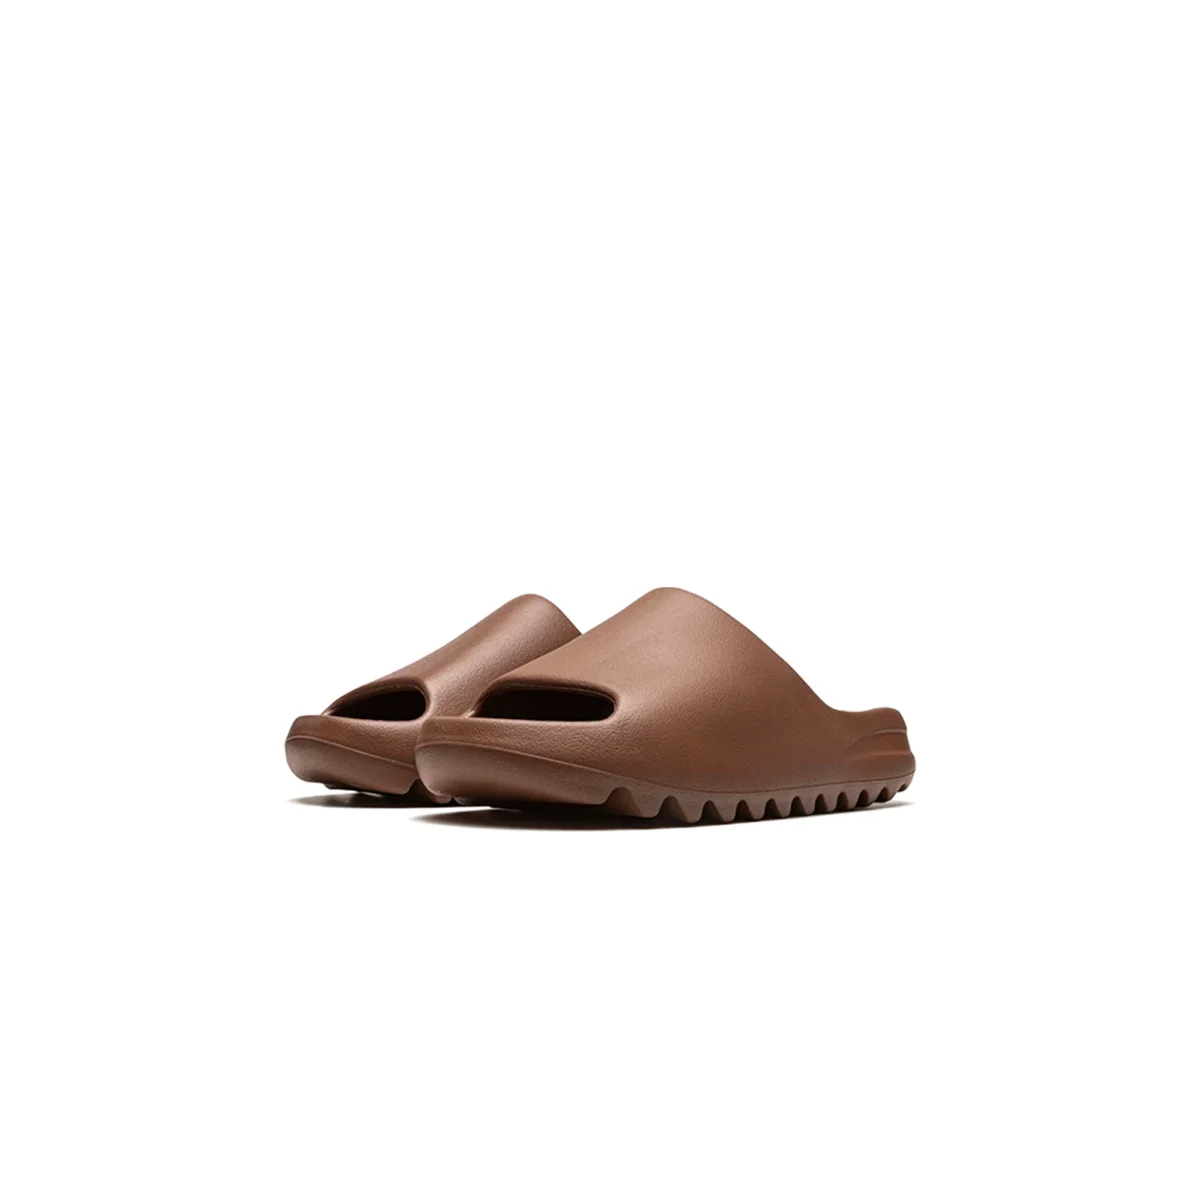 adidas Yeezy Slide Flax – PRM SPLY